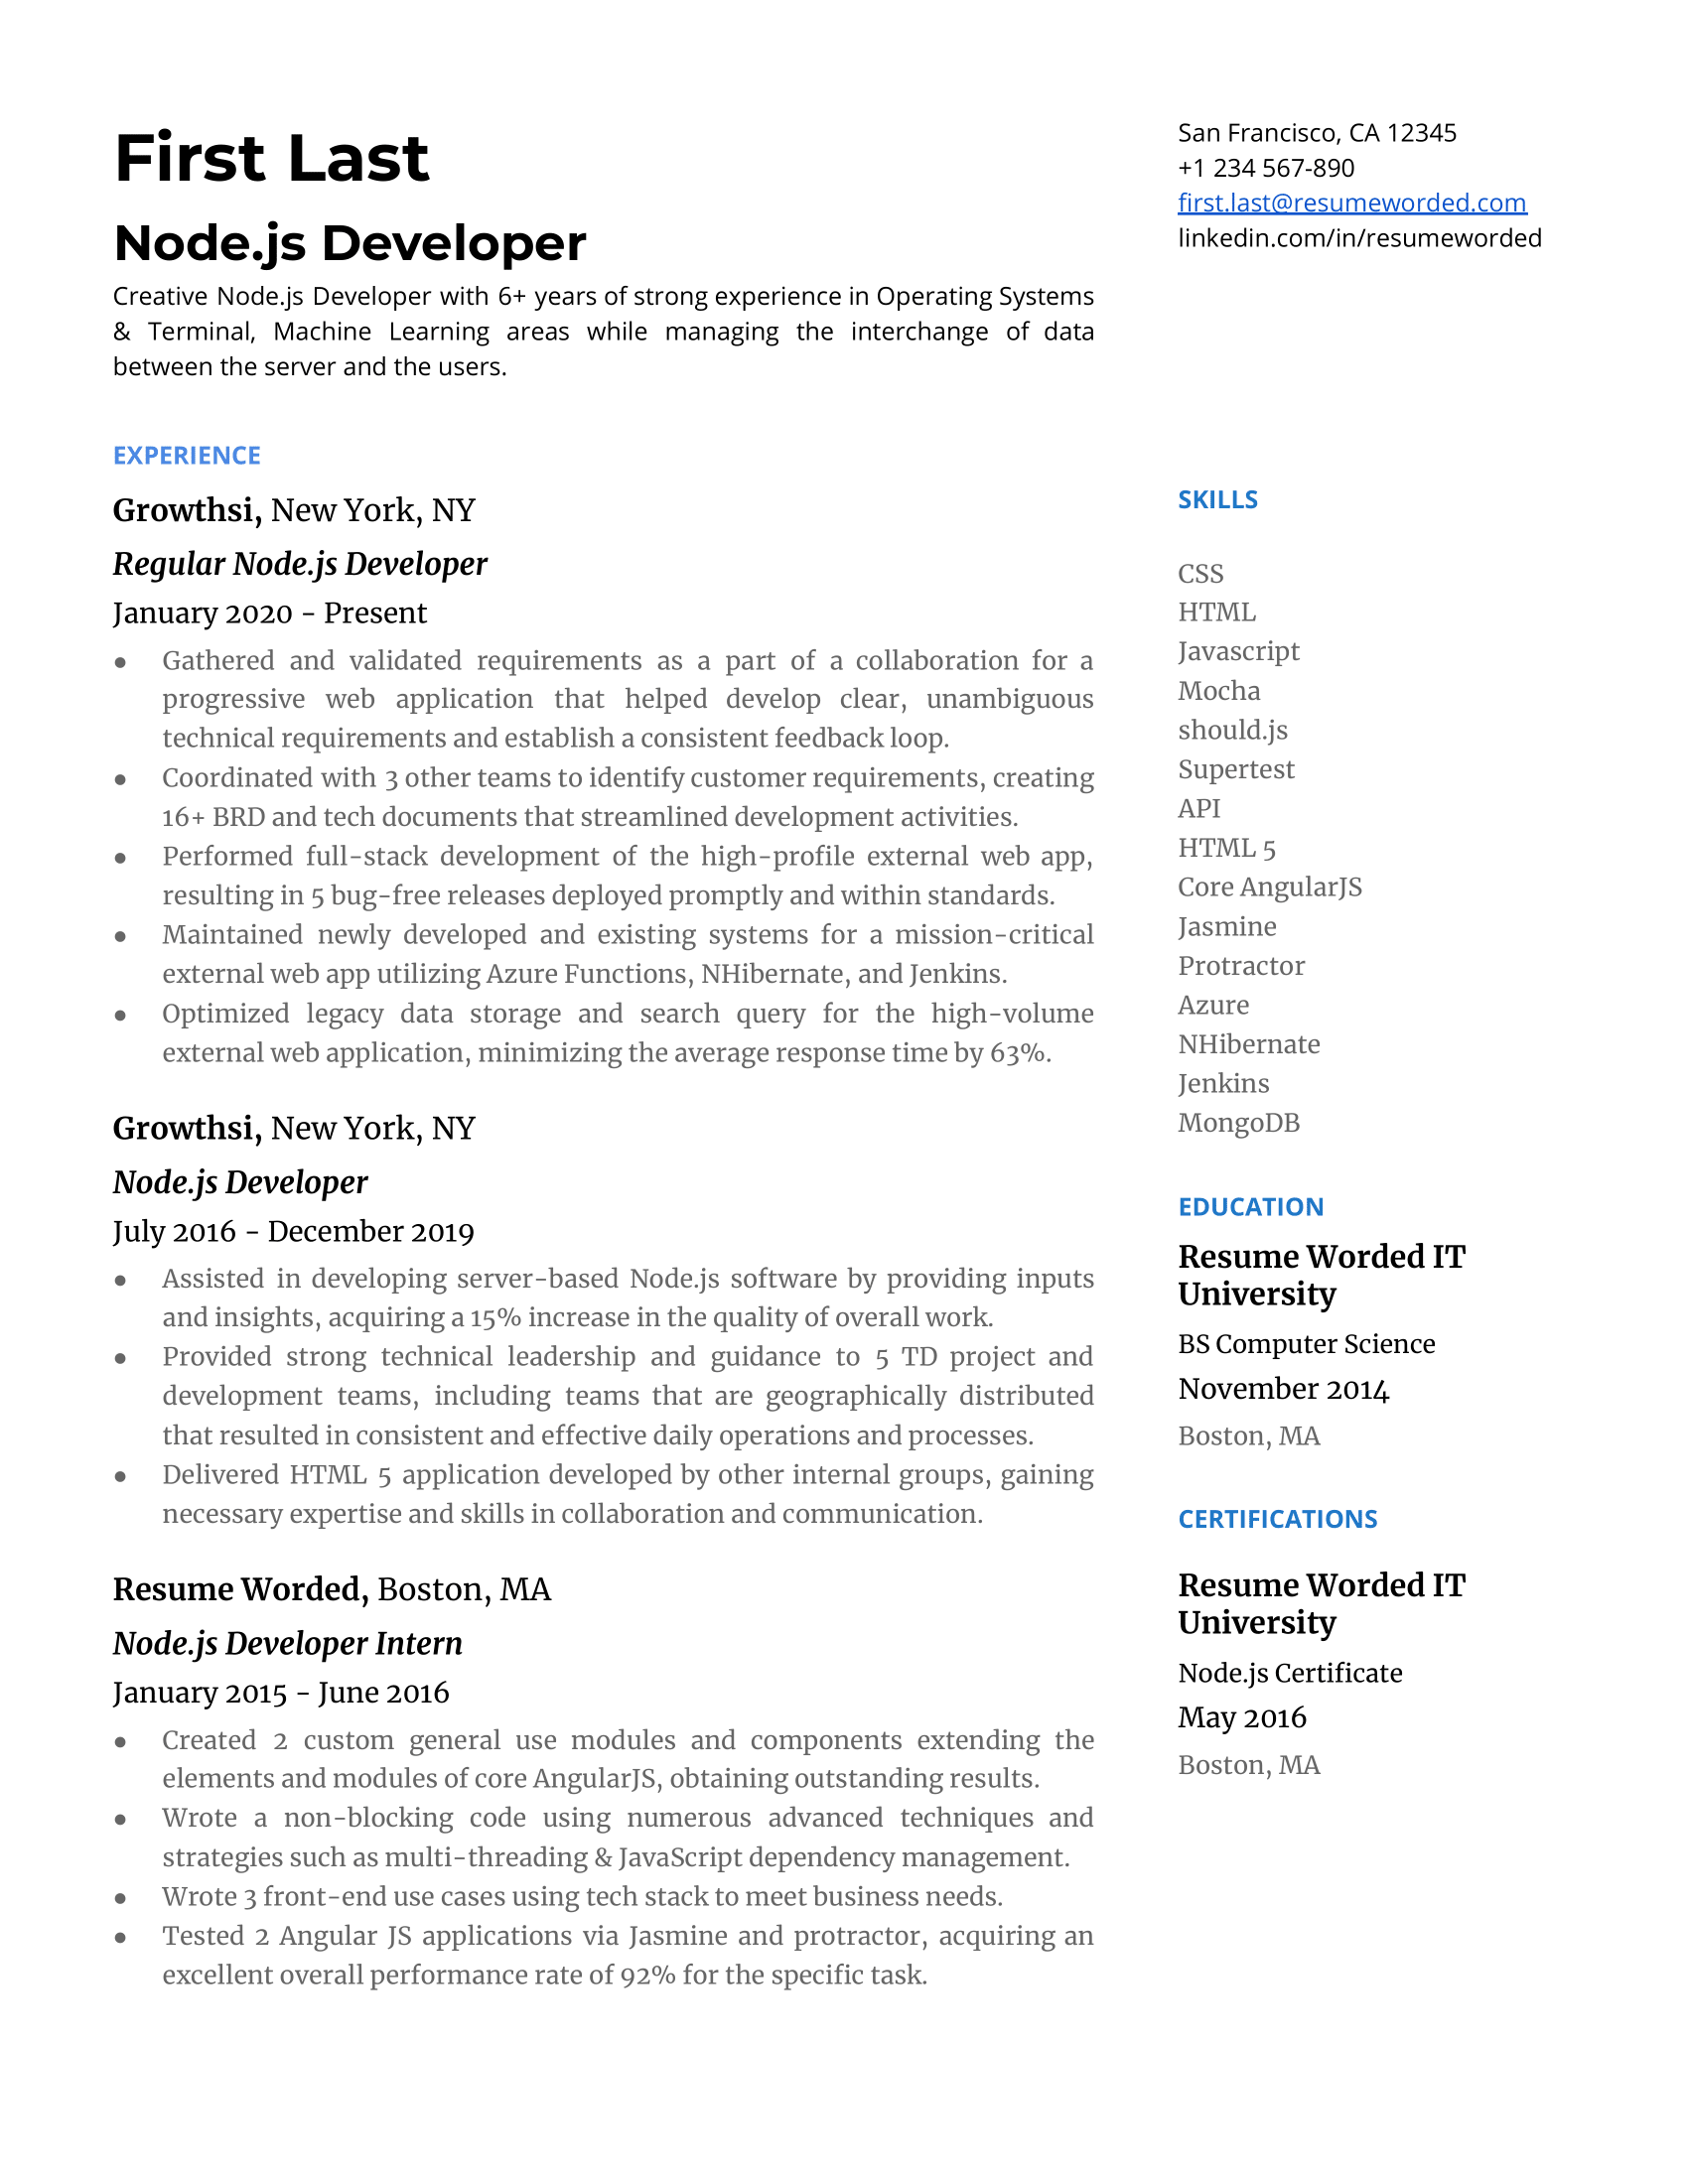 Screenshot of a well-crafted CV for a Node.js Developer role.